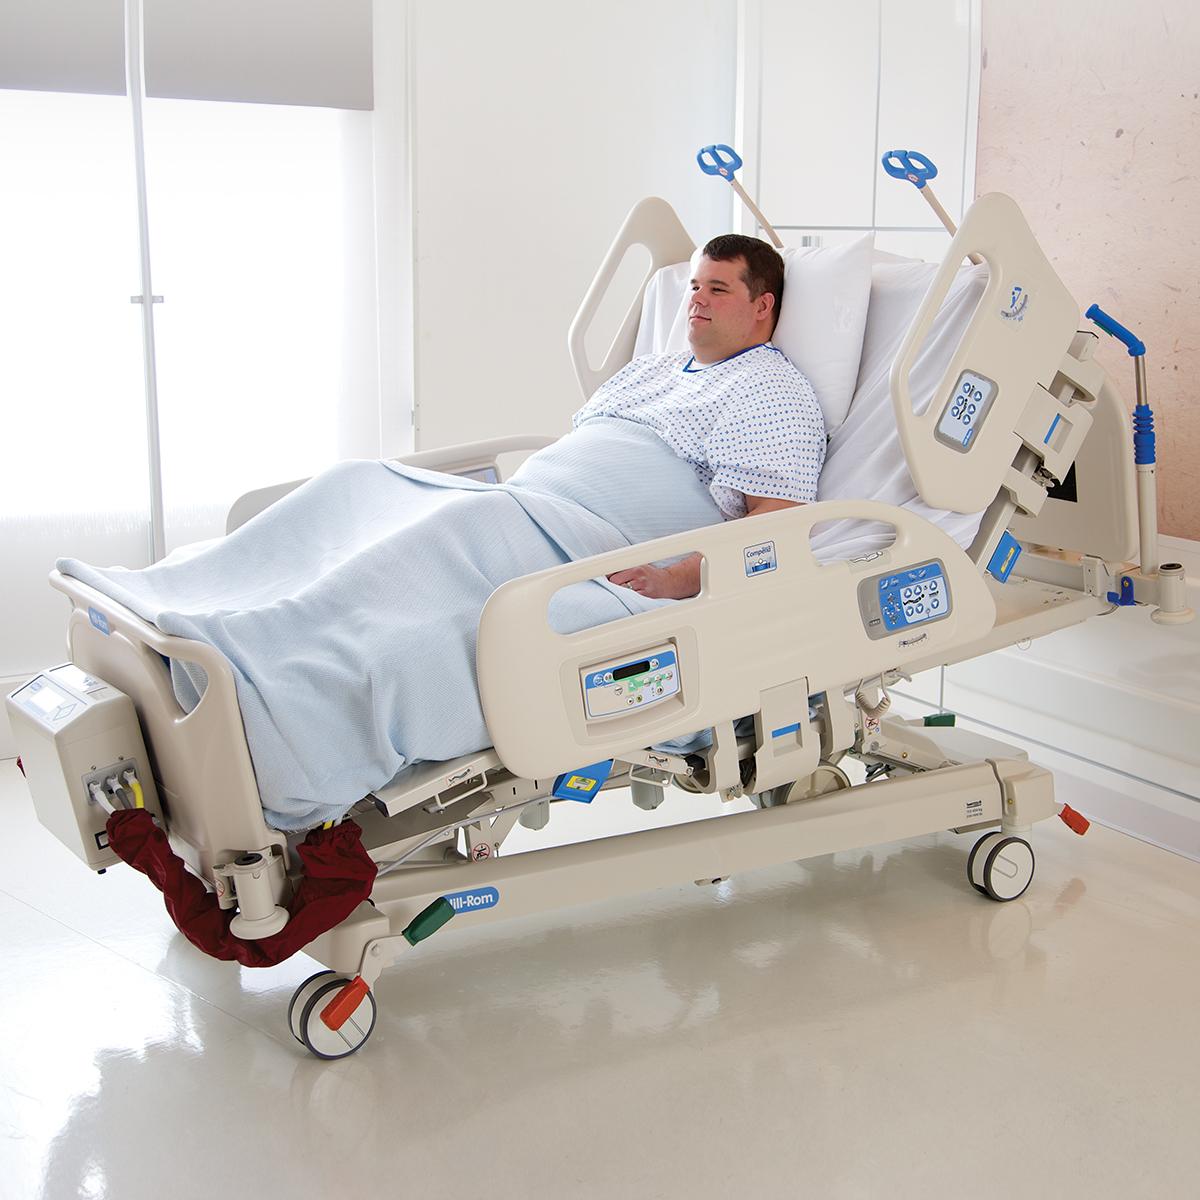 La funzione FlexAfoot consente di allungare rapidamente il letto bariatrico Compella per accogliere i pazienti più alti.